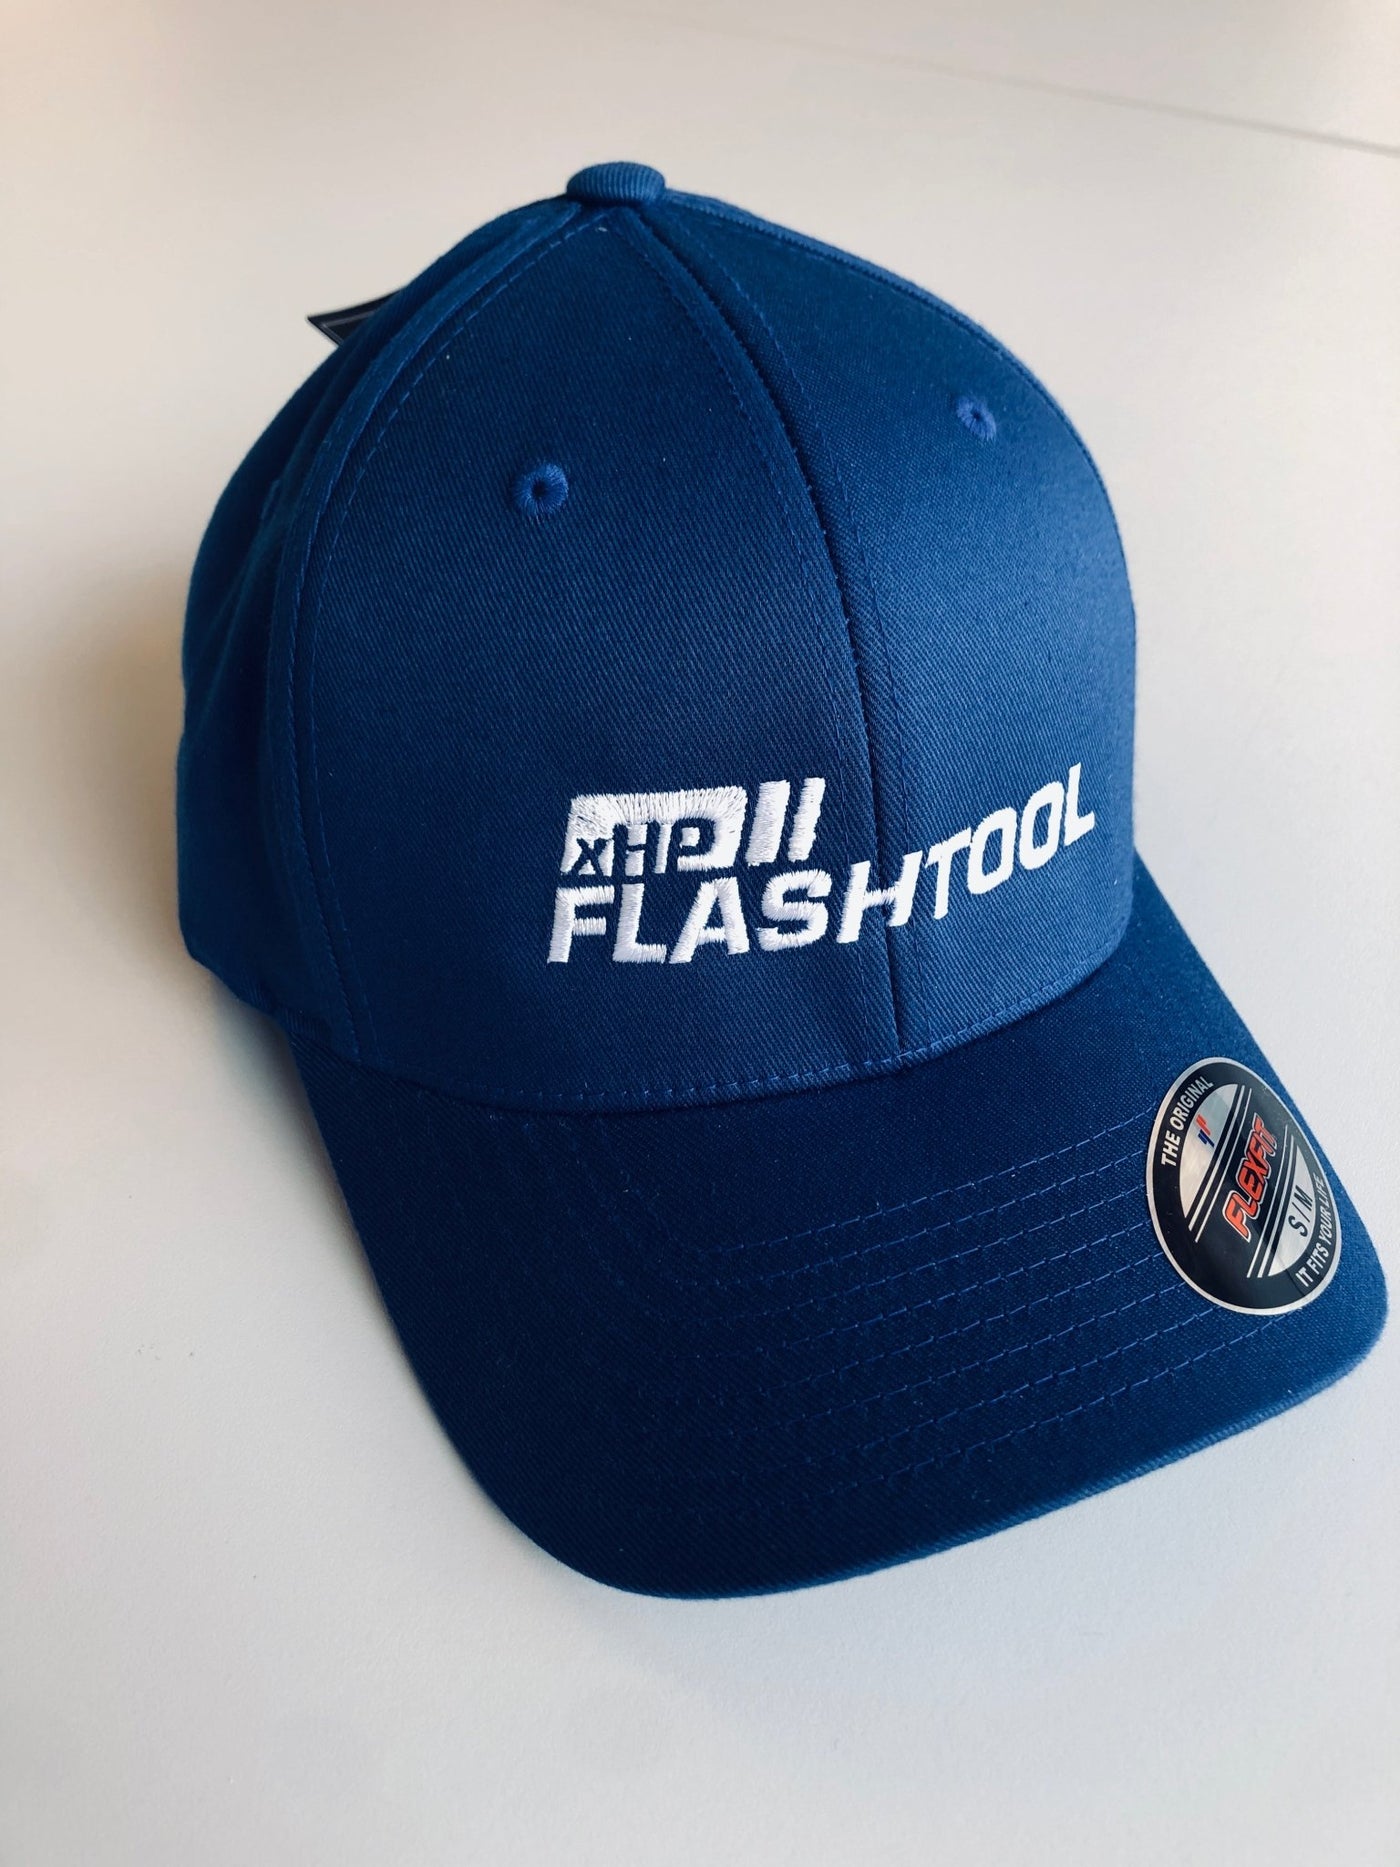 xHP Flashtool Baseball Cap (Flexfit) - Bimmer-Connect.com